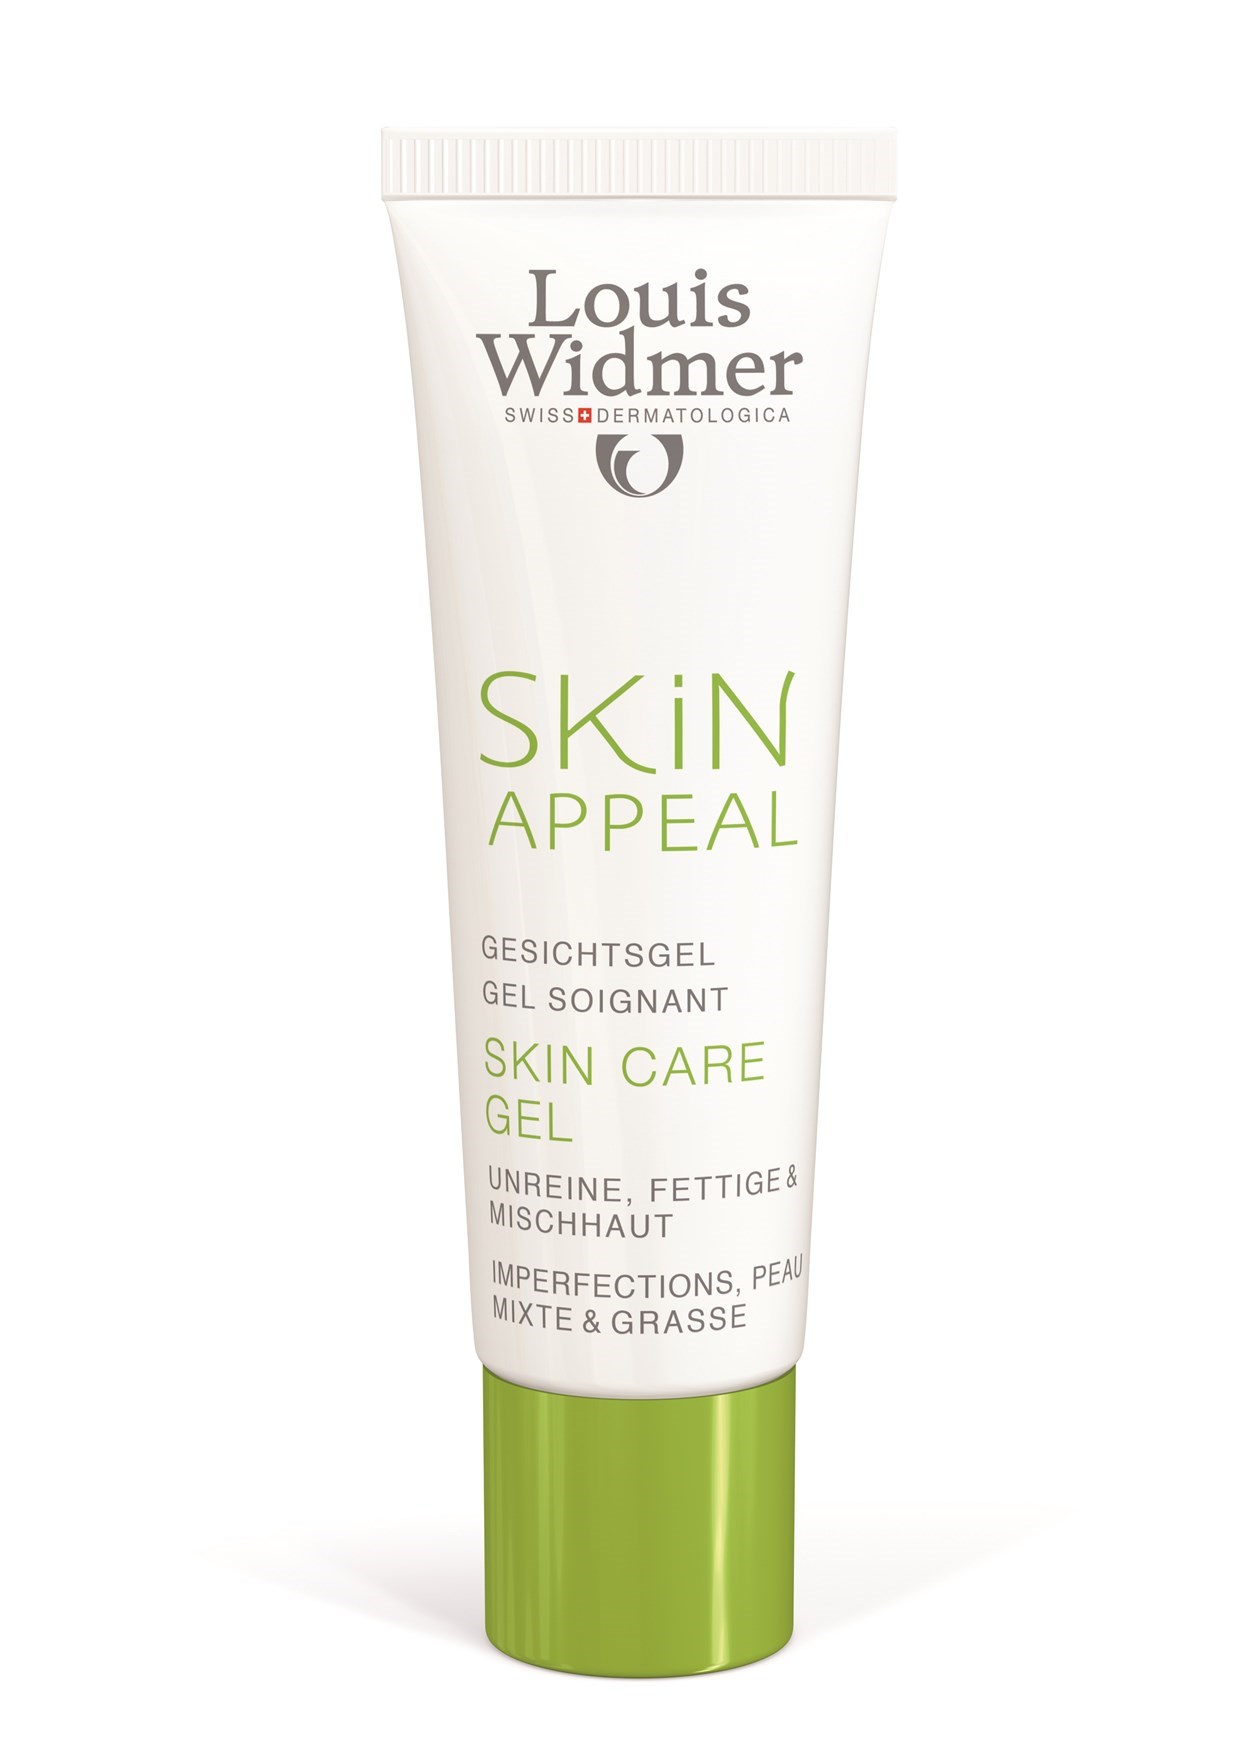 Ziek persoon Defecte Roux Louis Widmer Skin Appeal Skin Care Gel ZP kopen | Beauty Plaza